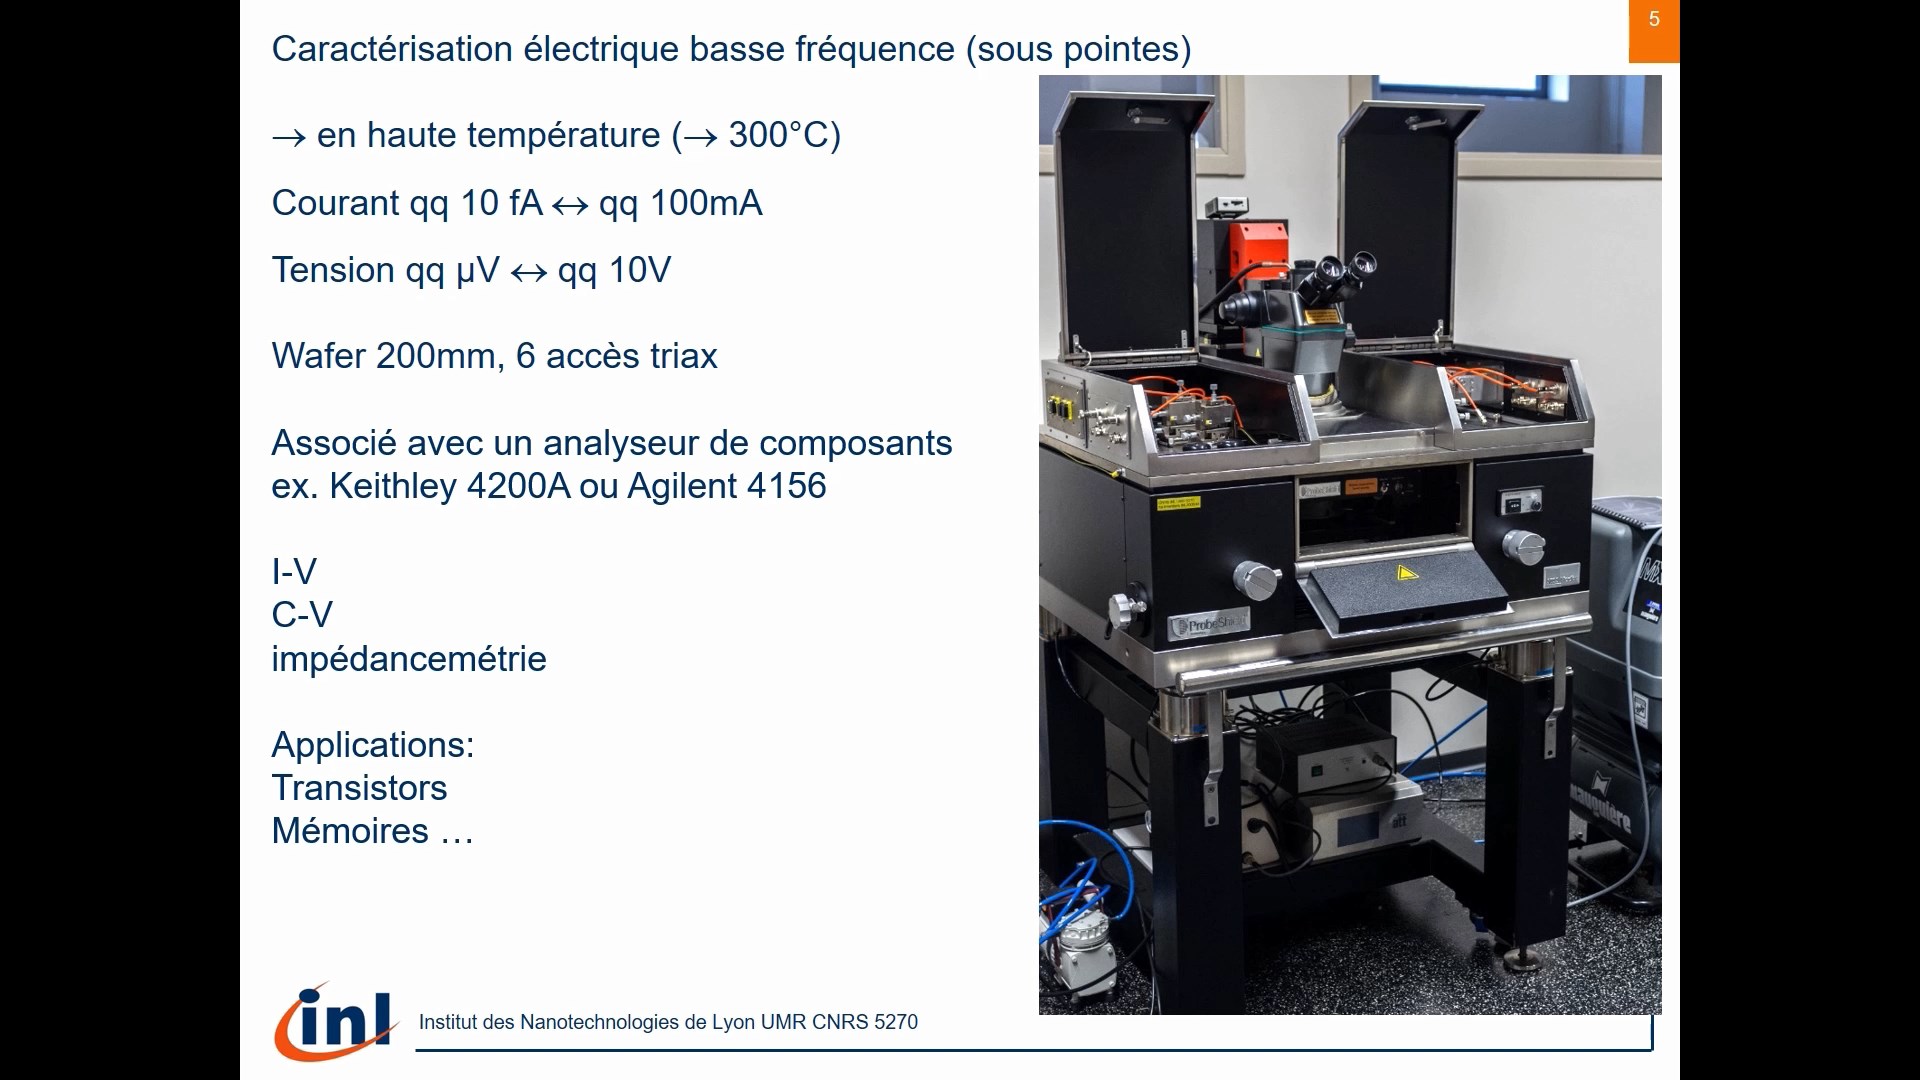 Moyen de caractérisation de l'équipe Dispositifs Électroniques de l'Institut des Nanotechnologies de Lyon